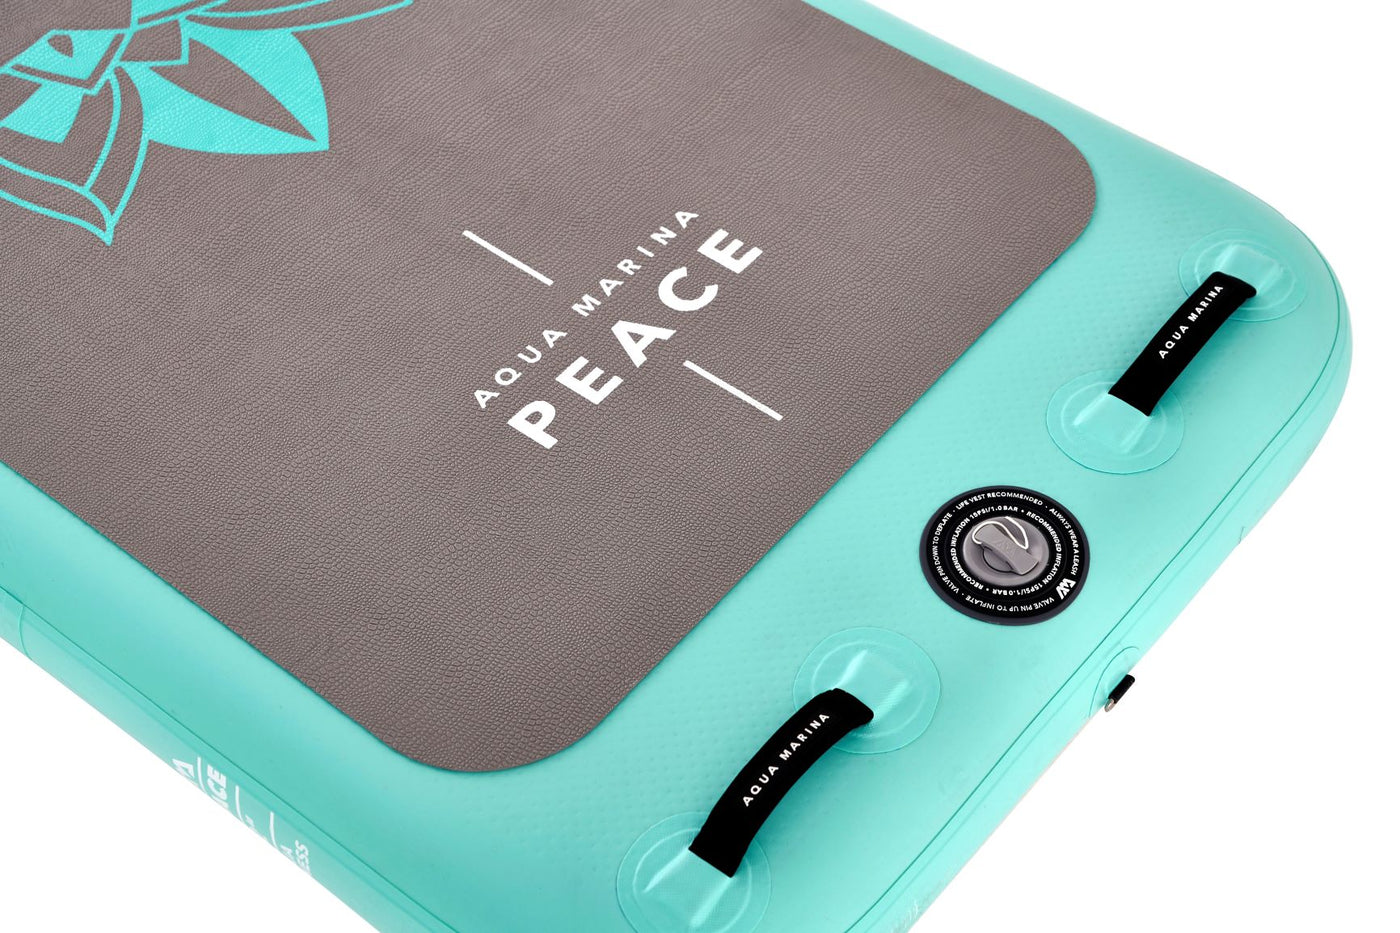 Aqua Marina Peace 8'2" Inflatable Yoga Board Kit